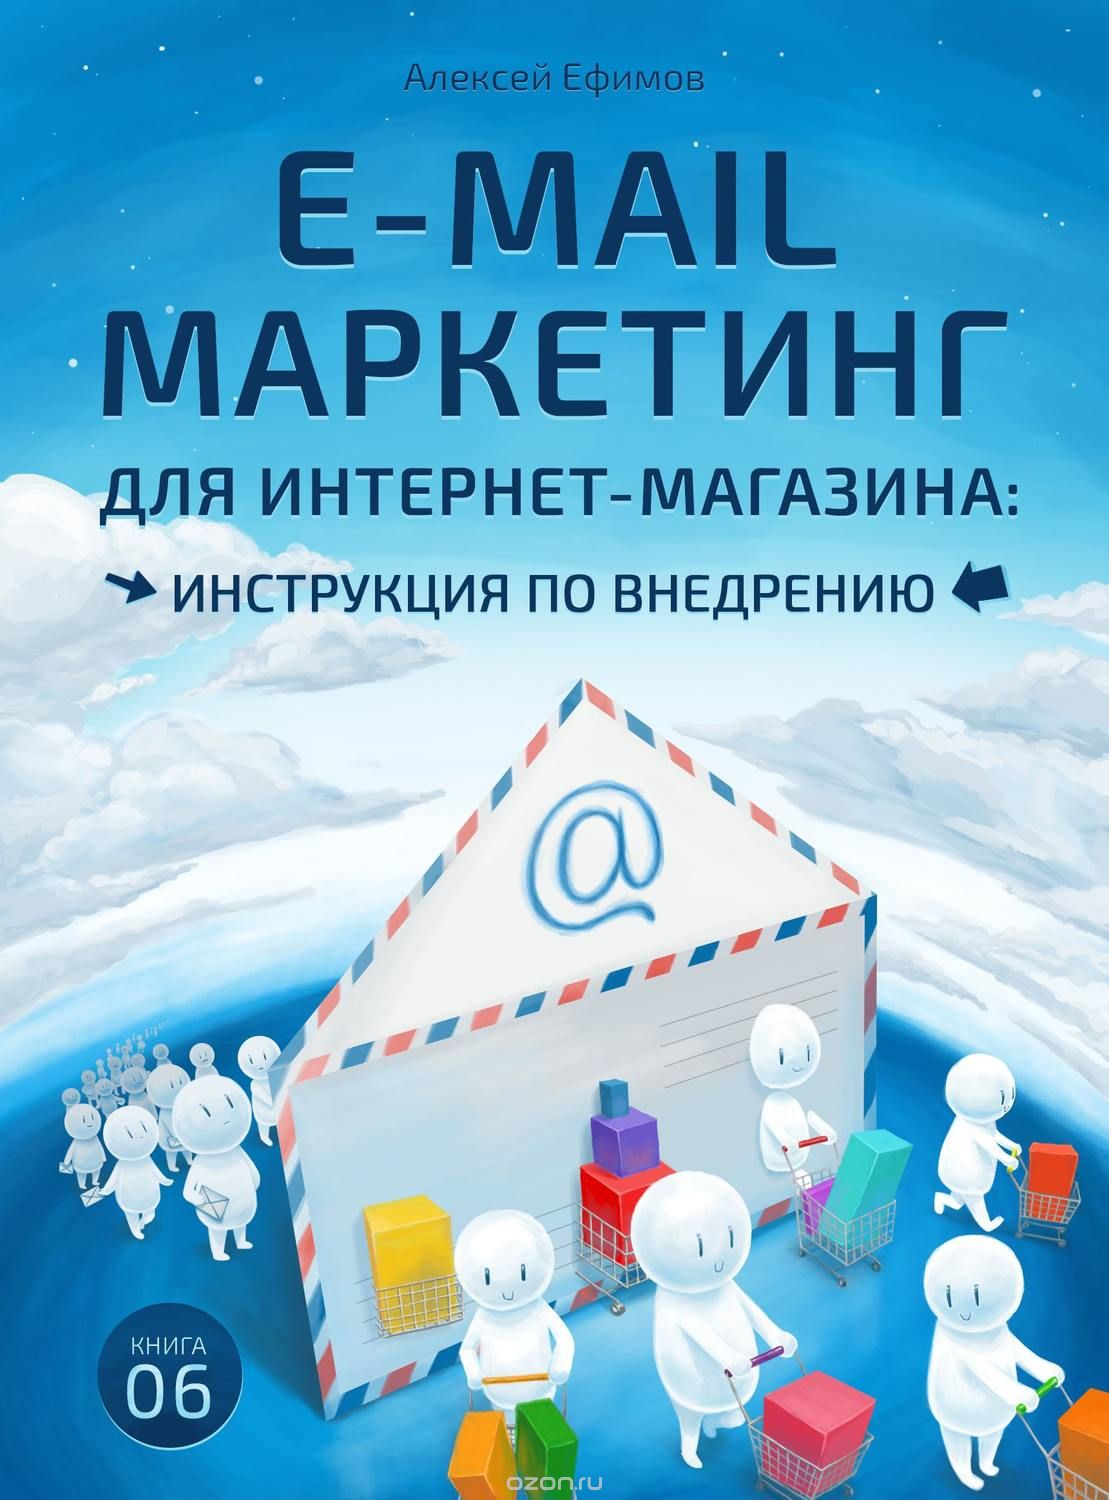 Алексей Ефимов — «E-mail маркетинг для интернет‑магазина. Инструкция по внедрению»